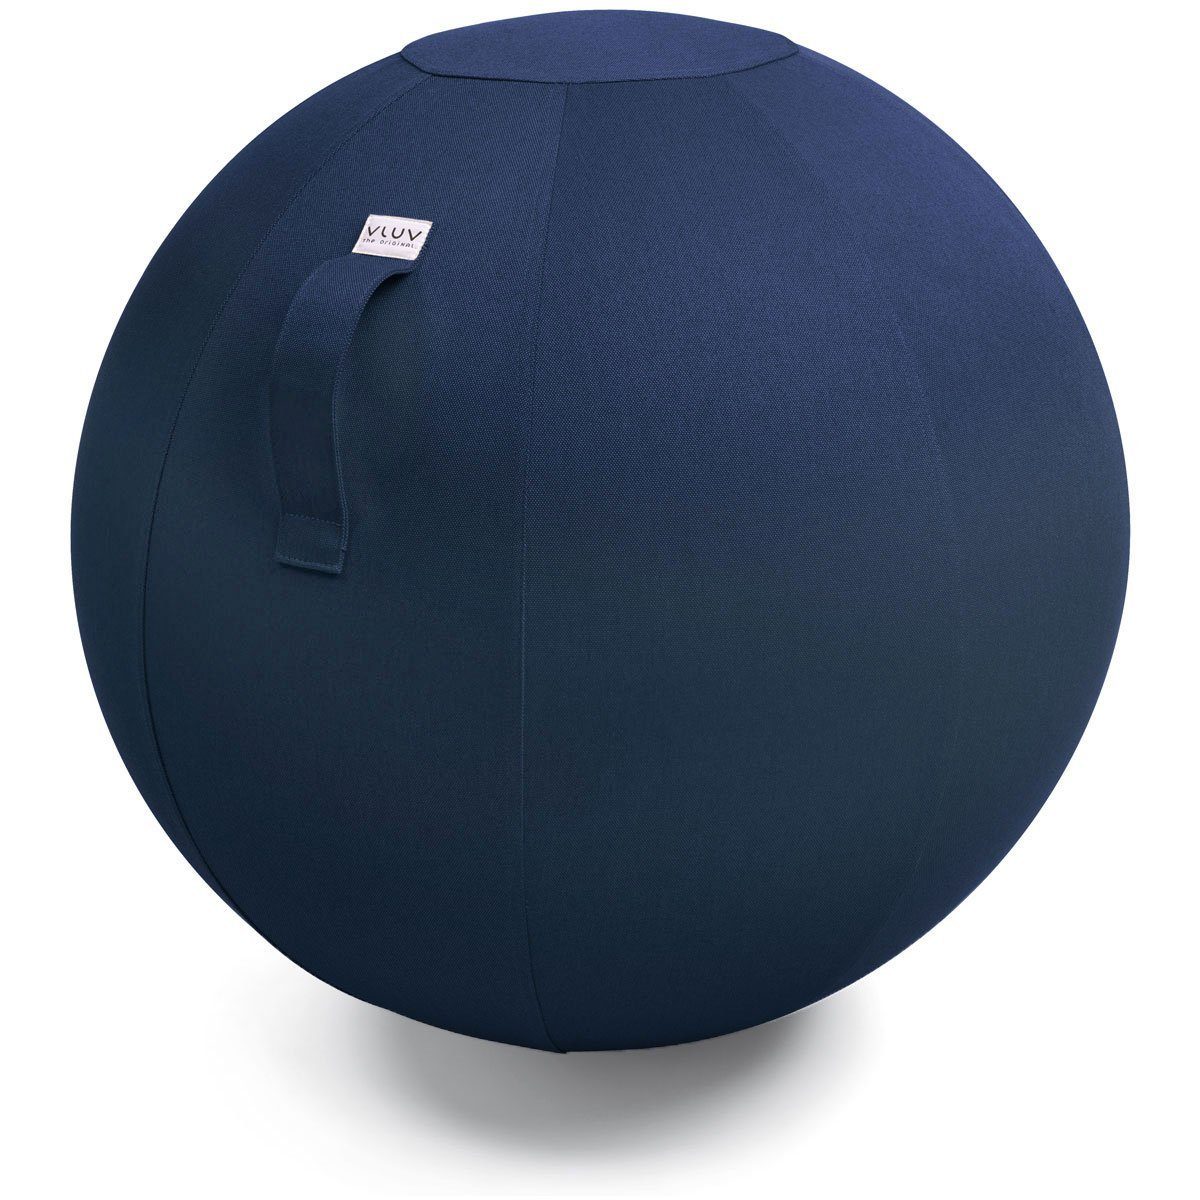 VLUV Sitzball BOL LEIV Stoff-Sitzball, ergonomisches Sitzmöbel für Büro und Zuhause, Farbe: Royal Blue (blau), Ø 60cm - 65cm, Möbelbezugsstoff, robust und formstabil, mit Tragegriff